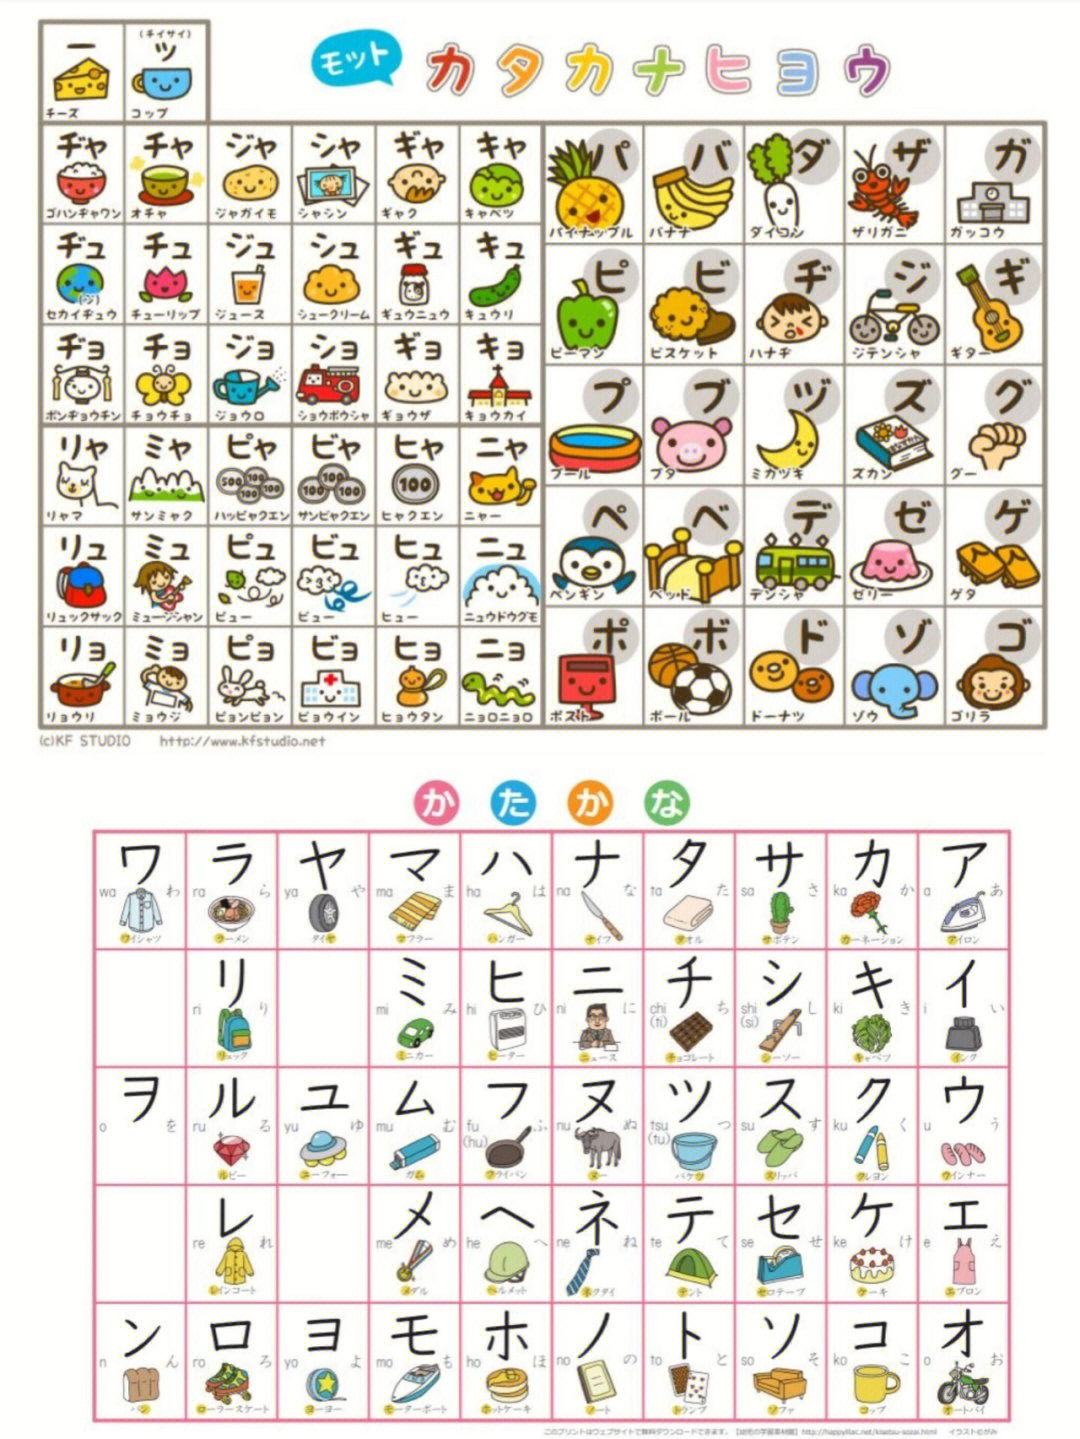 日语五十音图手抄报图片